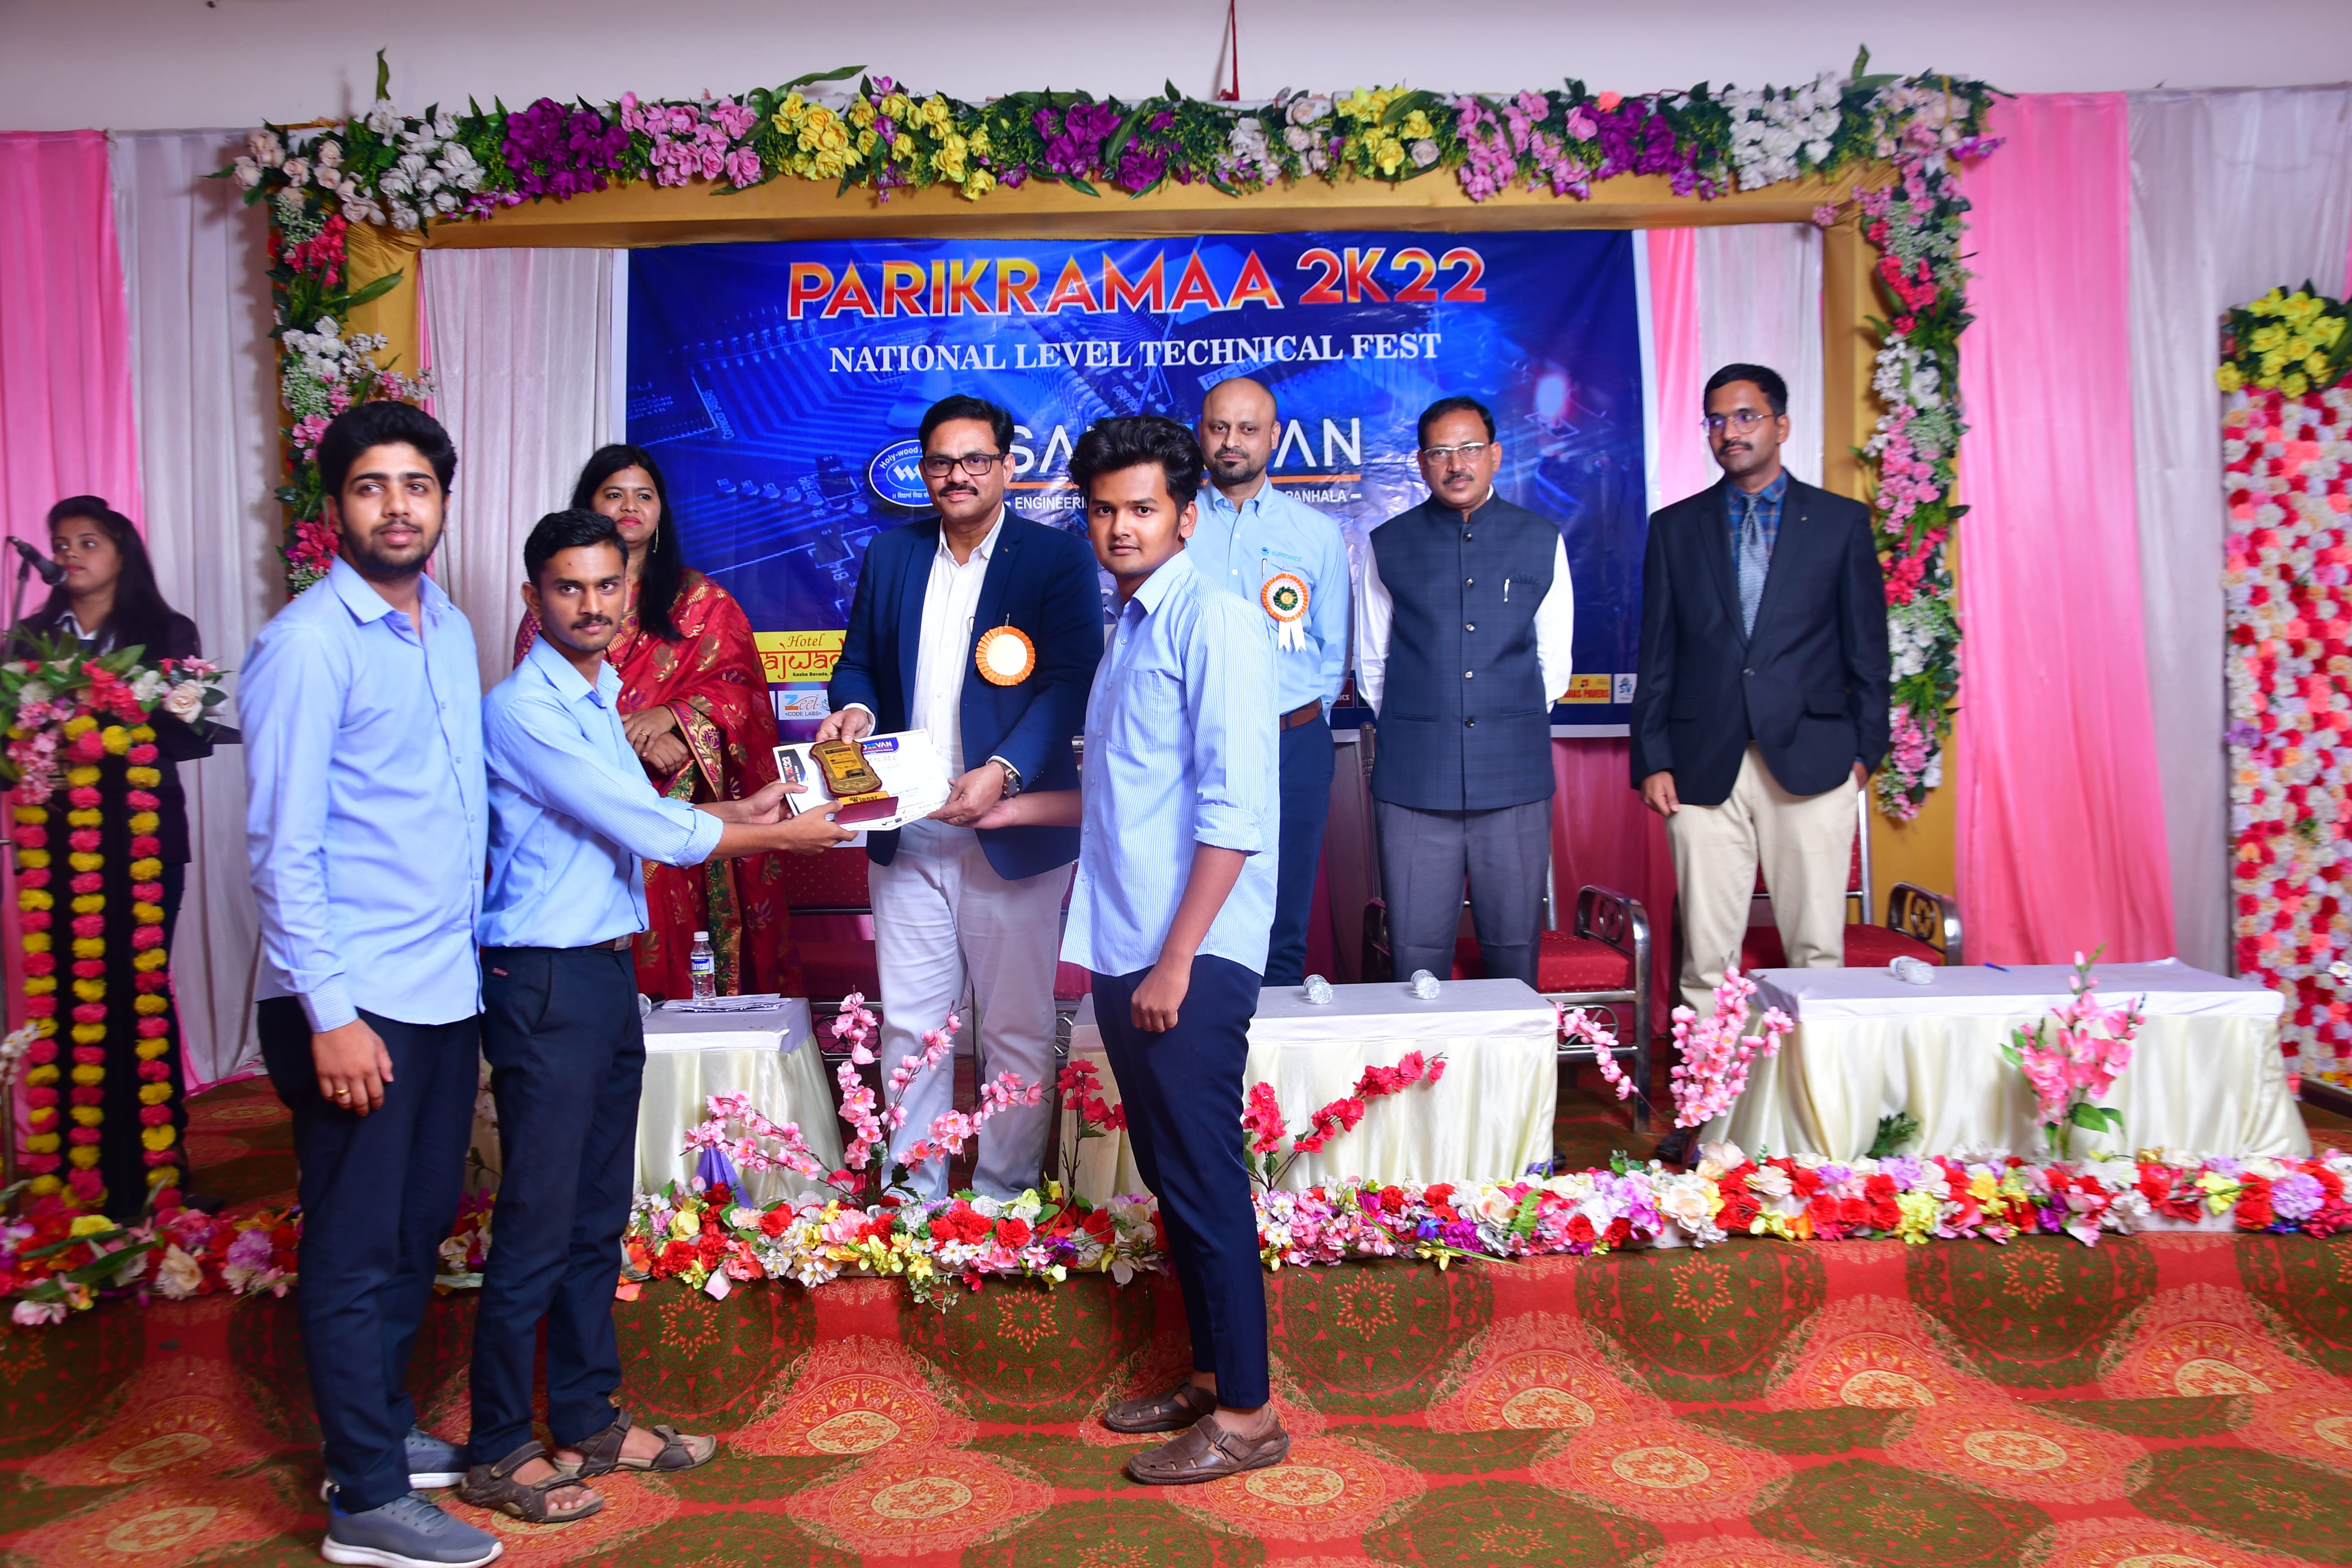 Parikramaa2k22 Prize Distribution